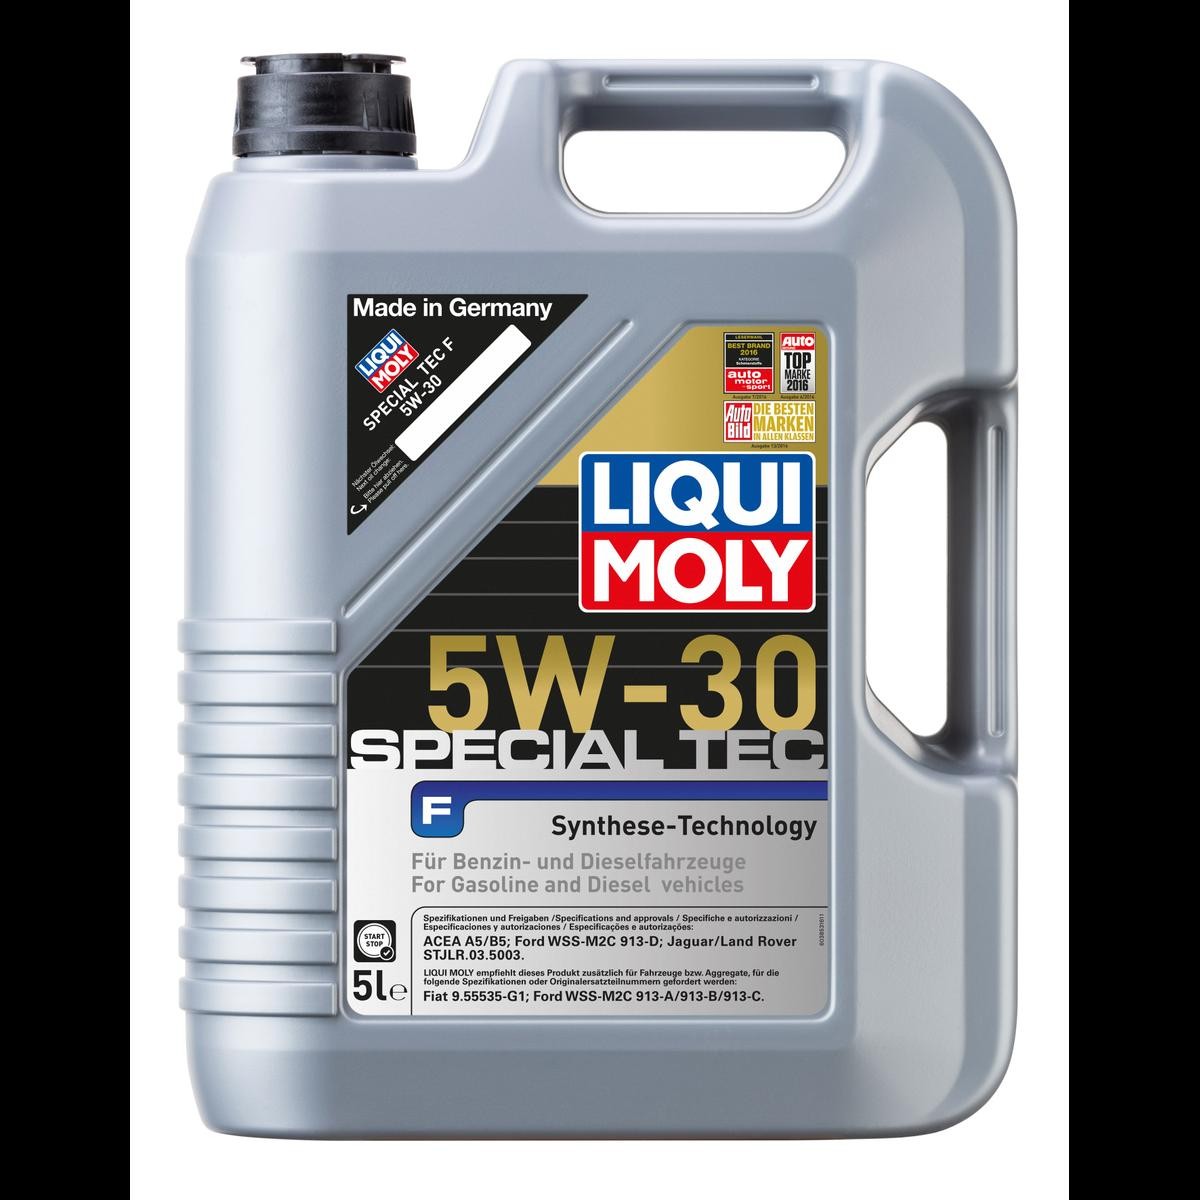 Liqui Moly Special Tec F 5W-30 Motoröl , 5 Liter